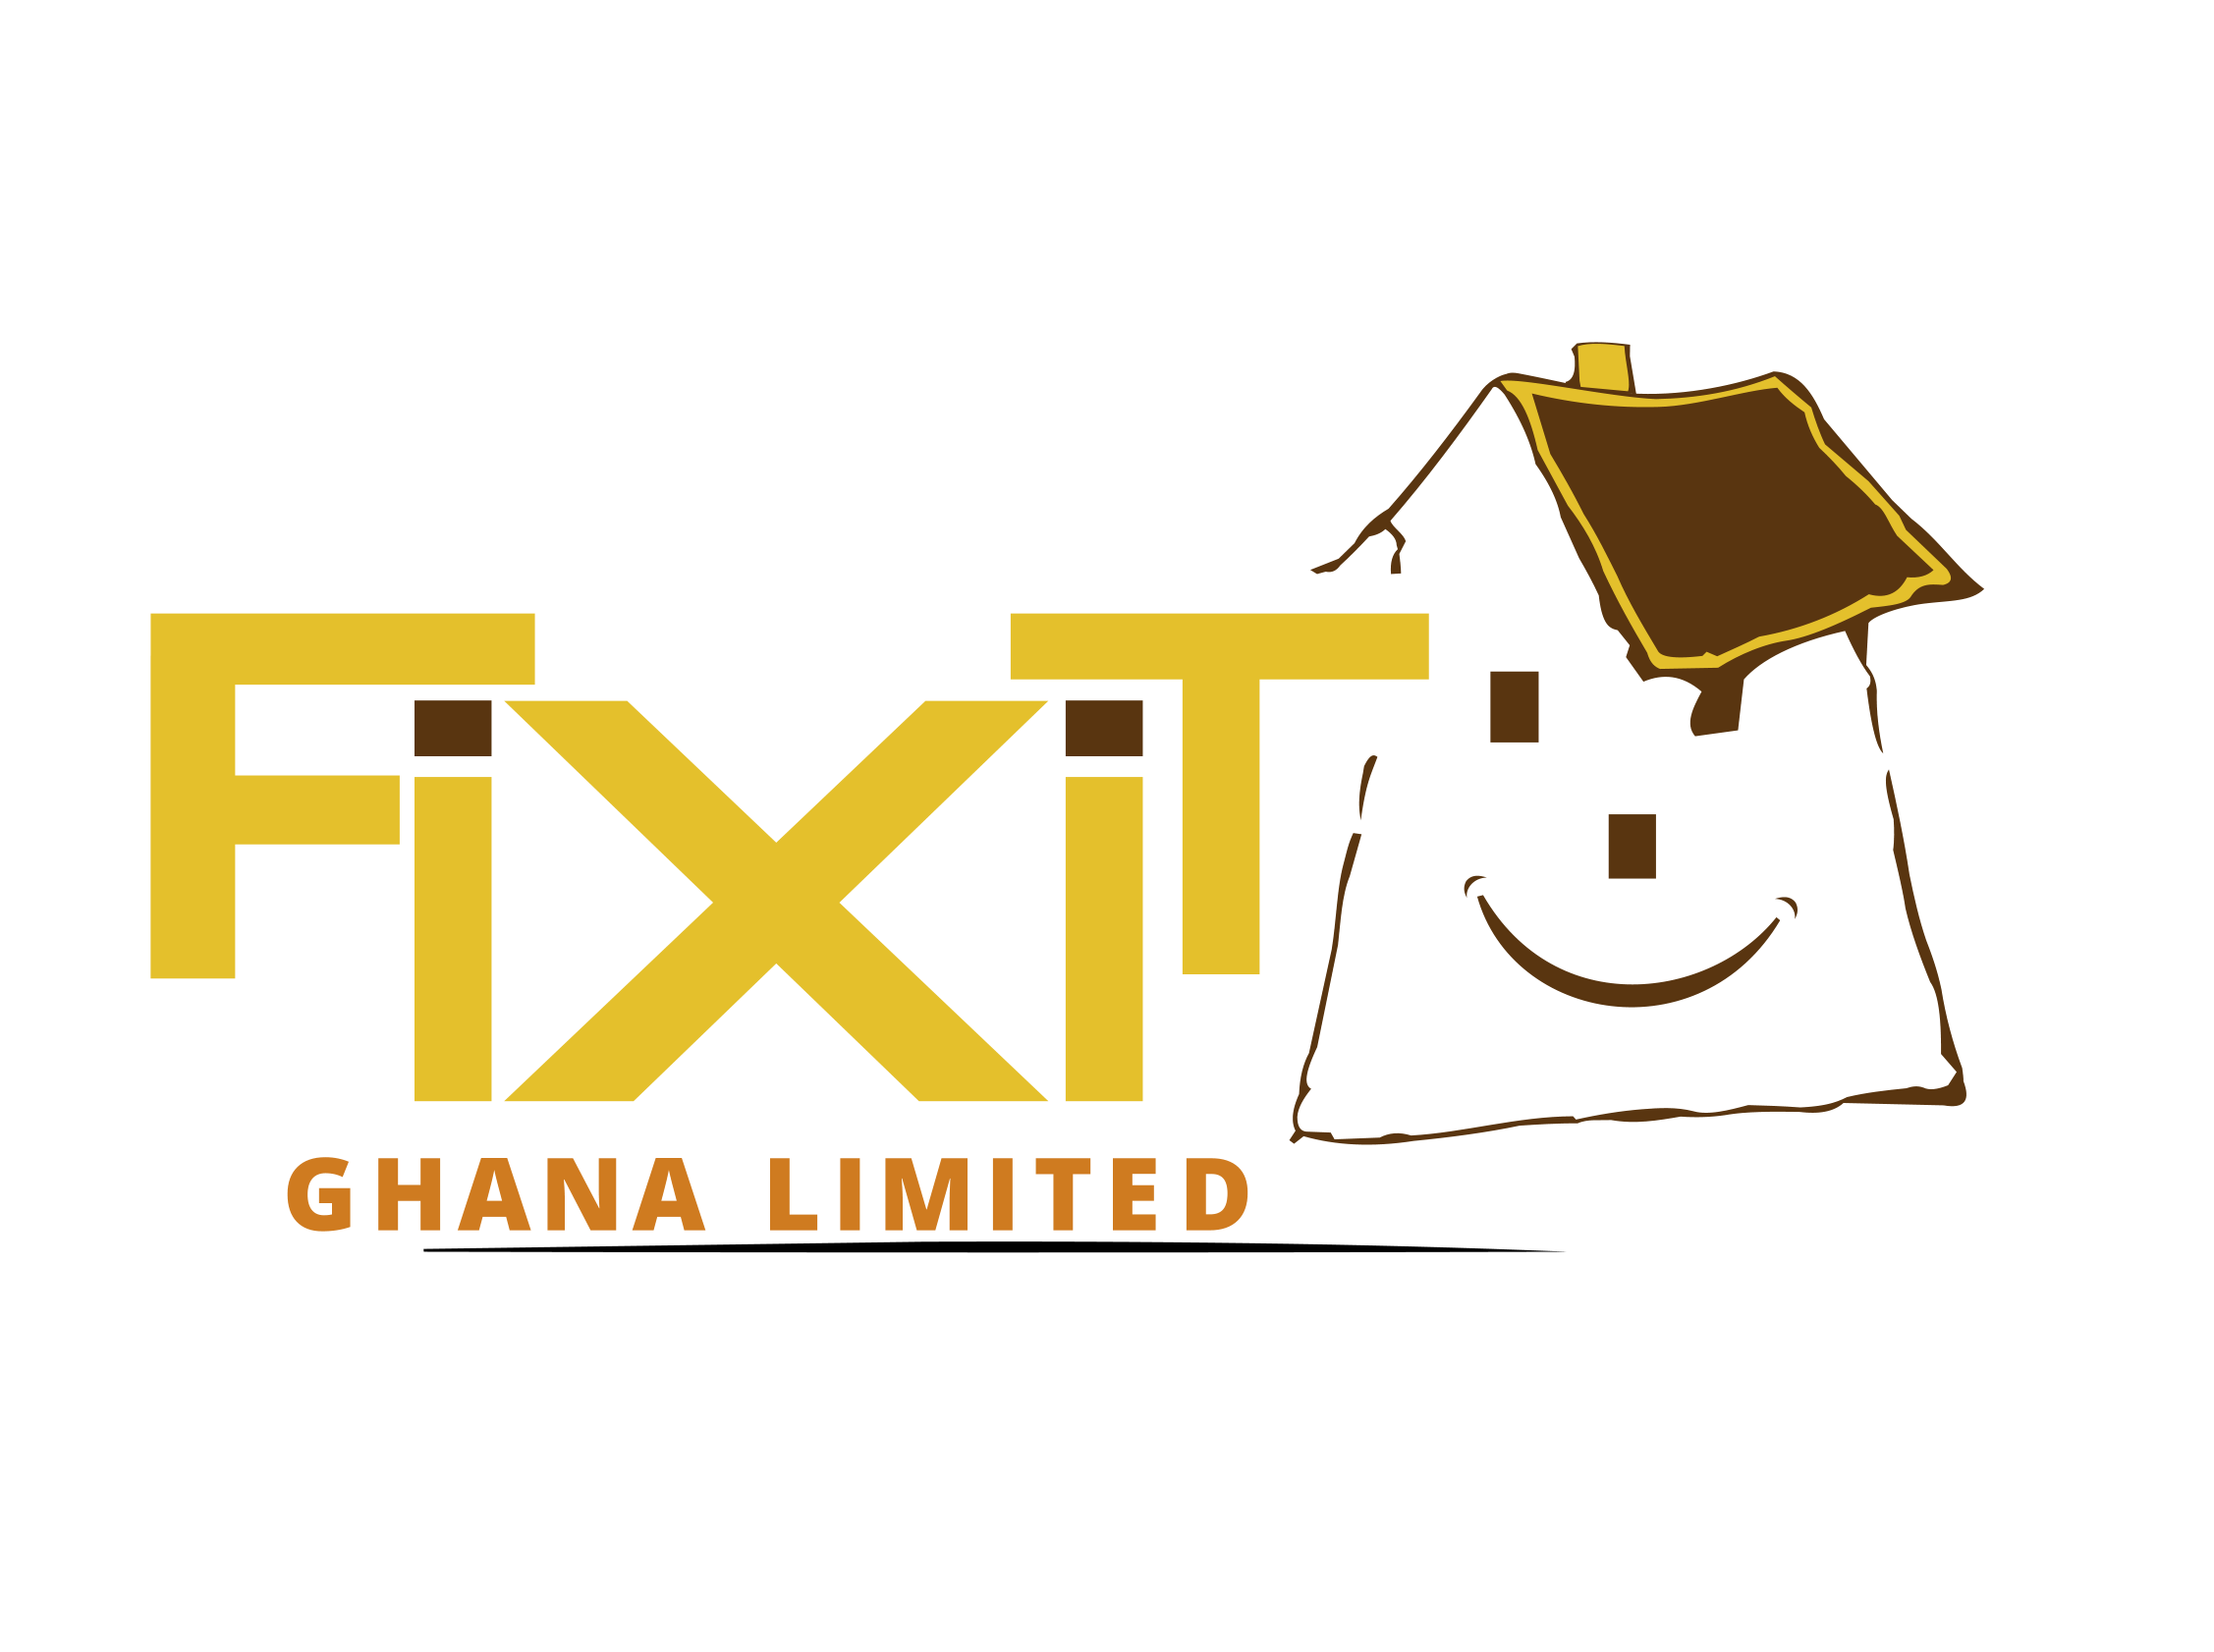 FIXIT GHANA LTD